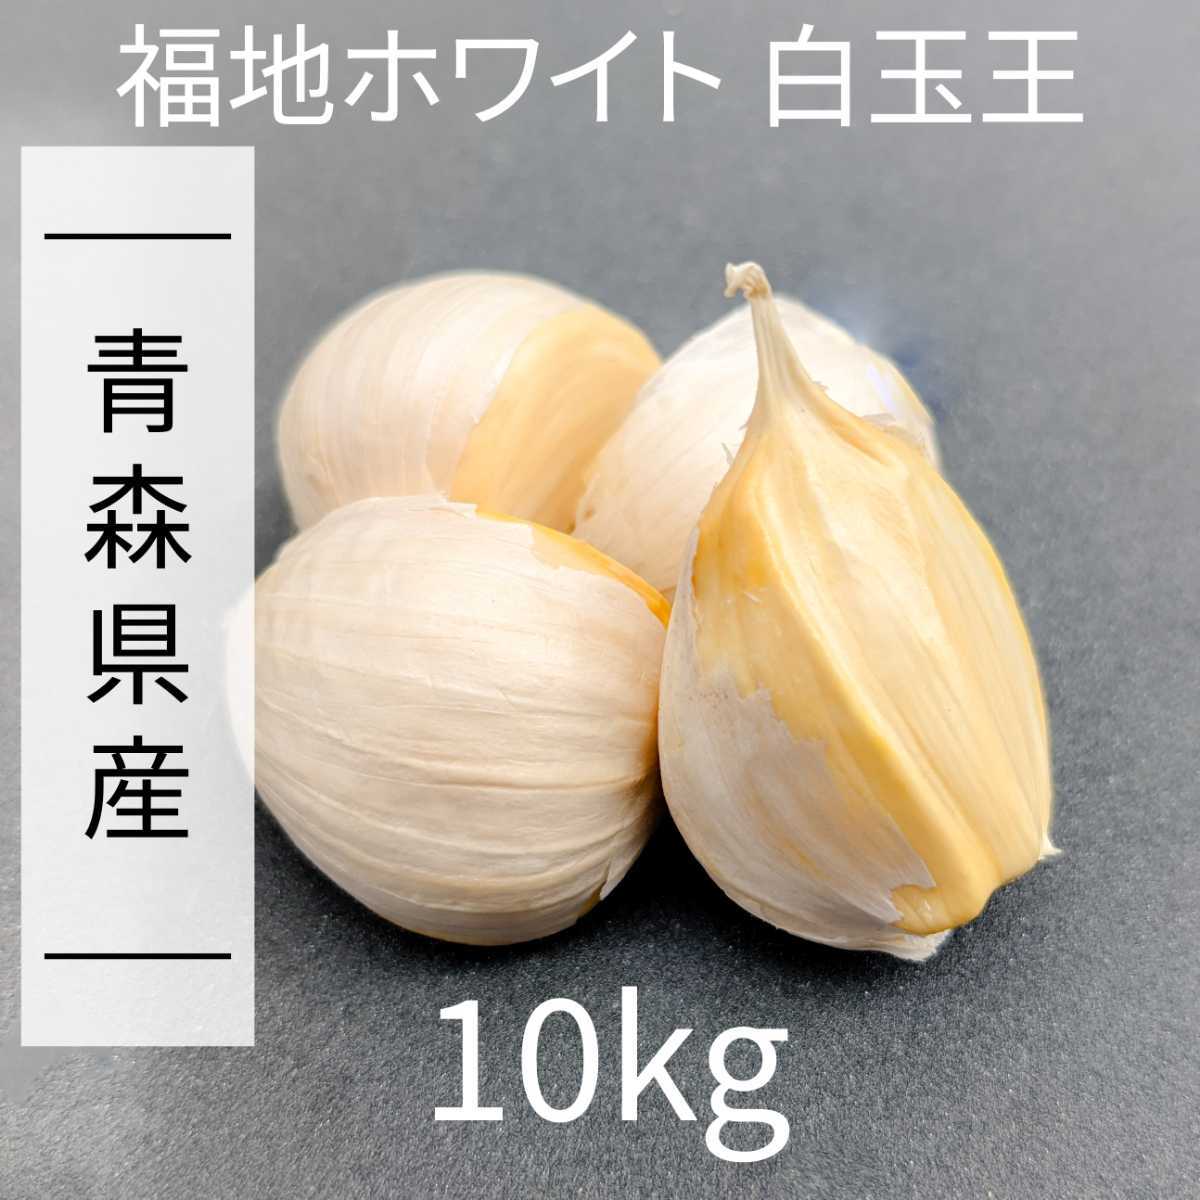 青森県にんにく20Kg L早い者勝ち 野菜 香味野菜 shottys.com